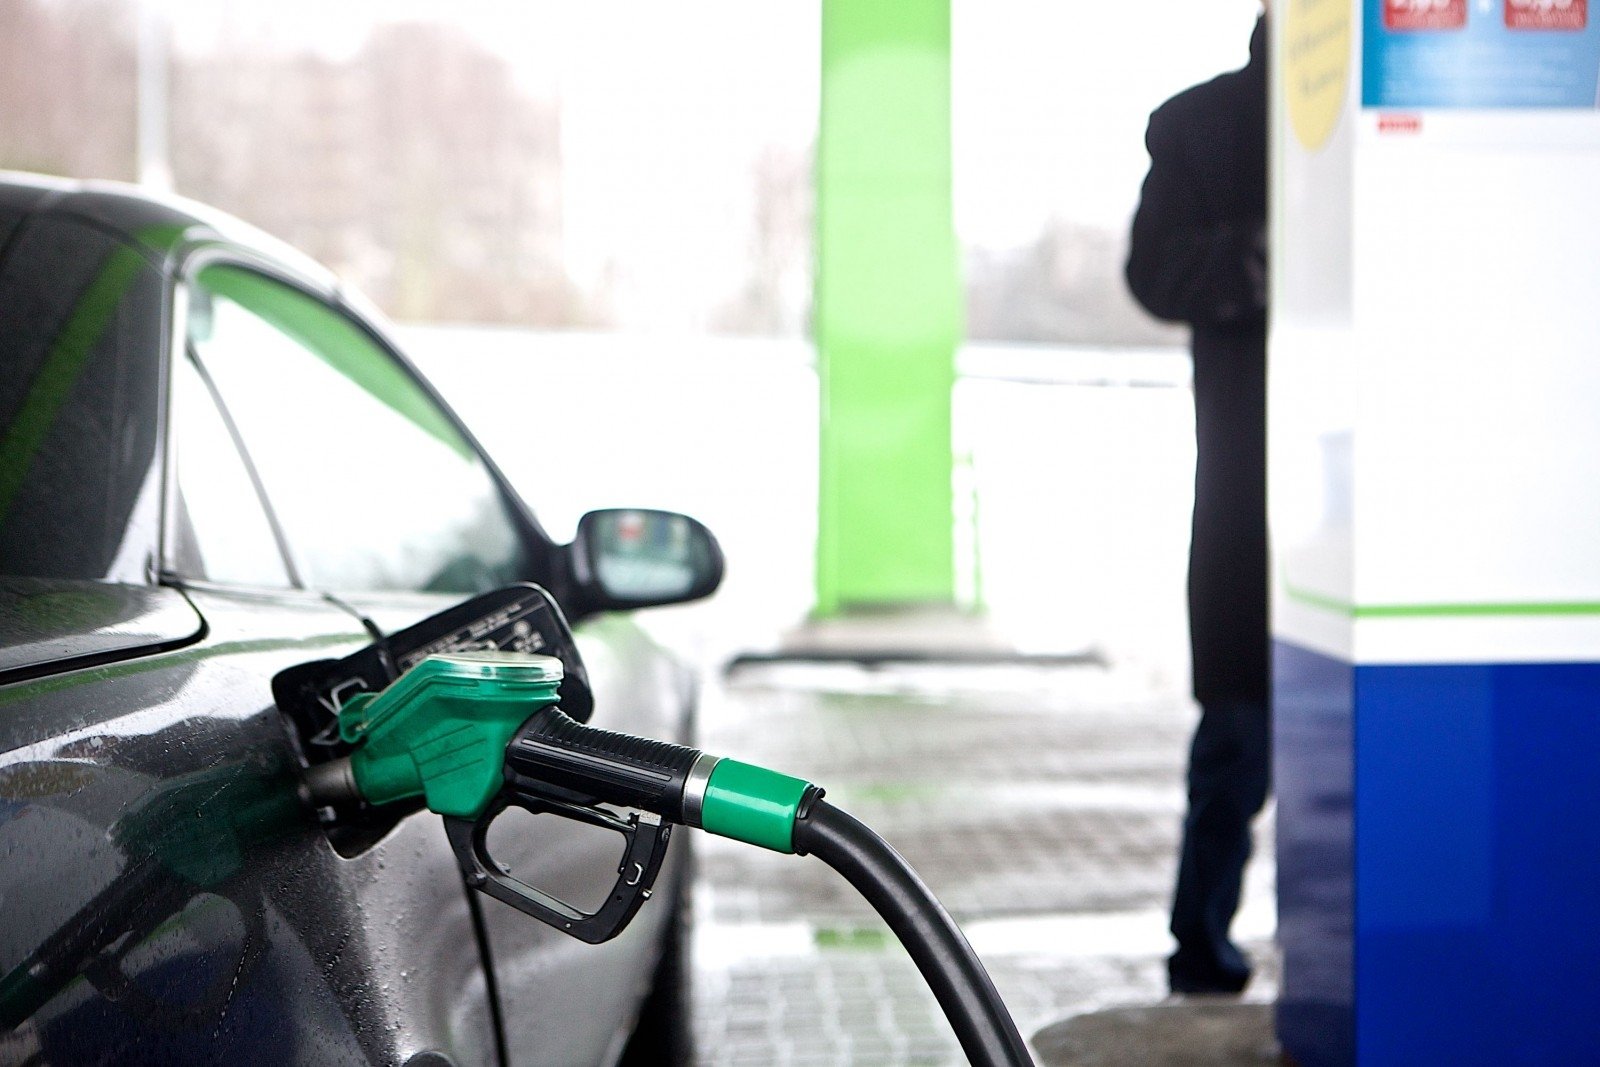 Paskutinę sausio savaitę degalų kainos Lietuvoje didėjo, tačiau išliko mažiausios Baltijos šalyse, skelbia Lietuvos energetikos agentūra (LEA).